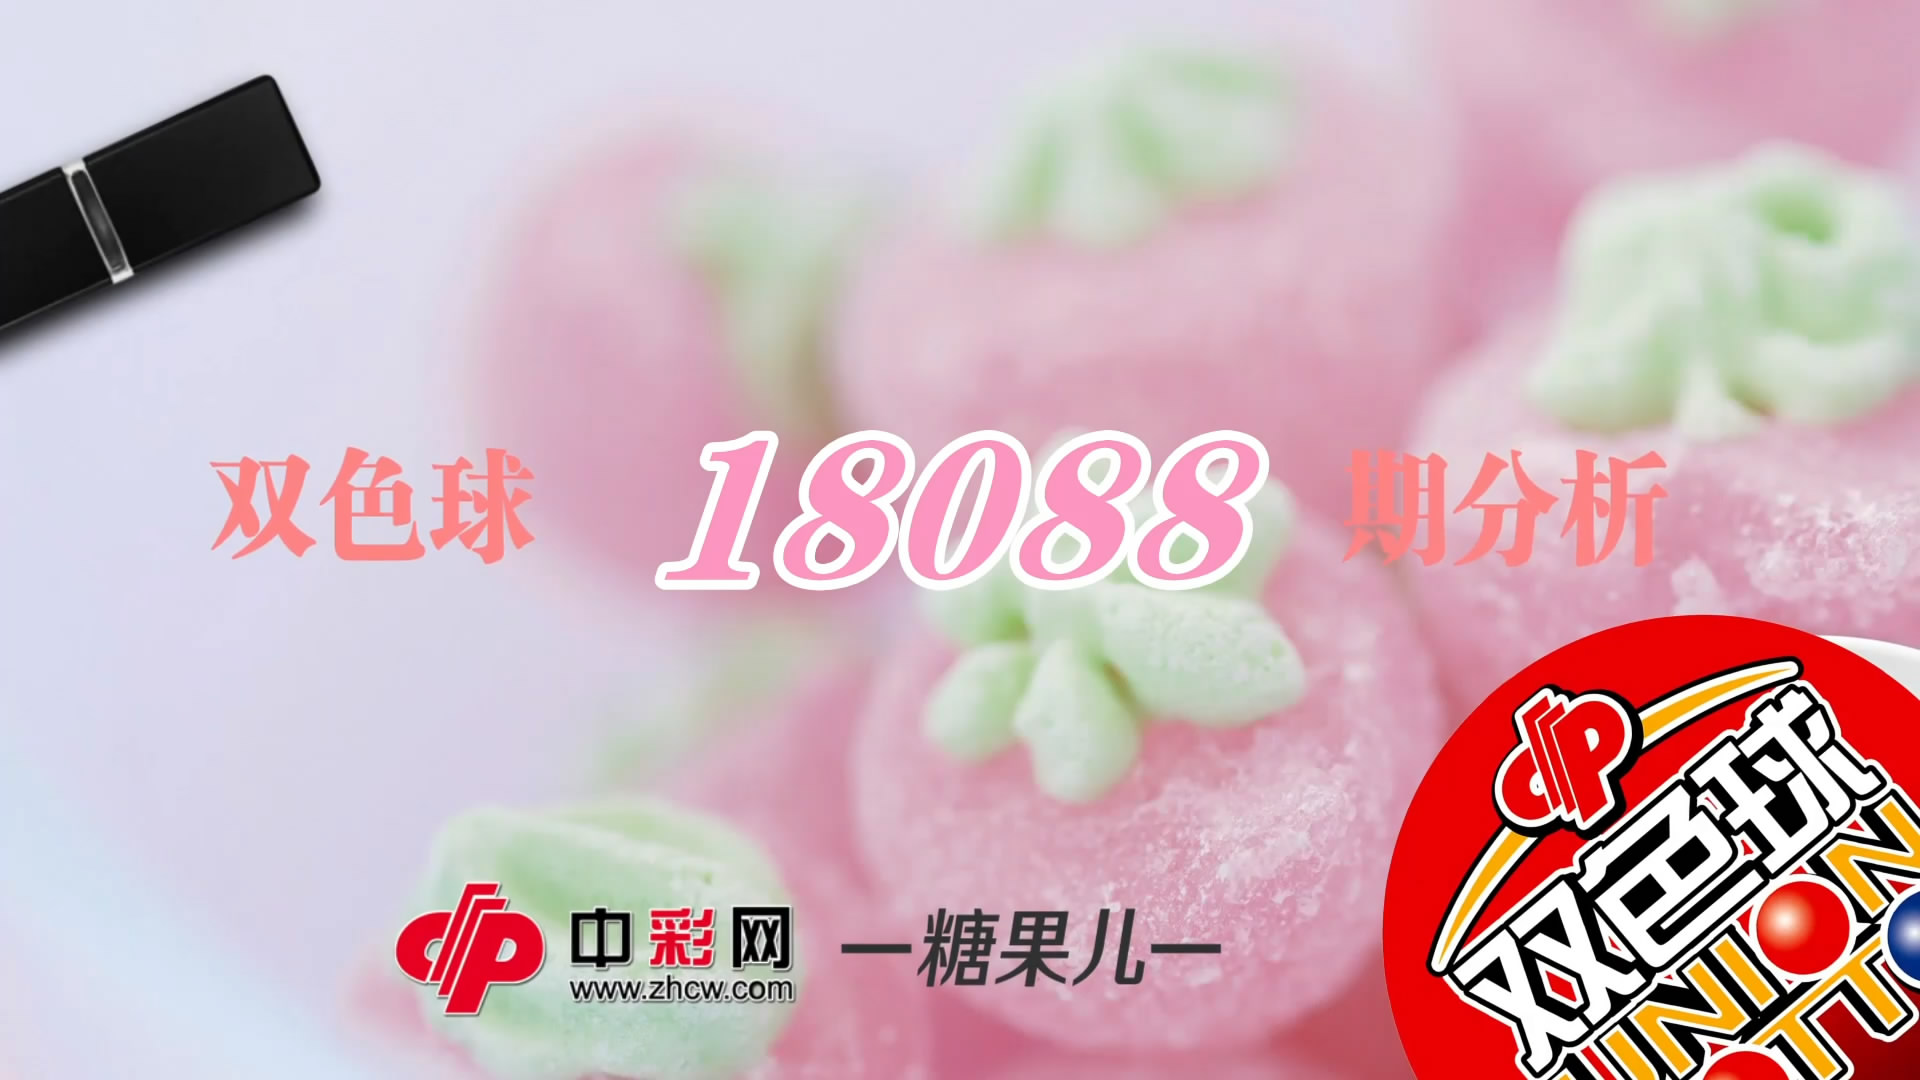 【中彩视频】糖果儿双色球第18088期